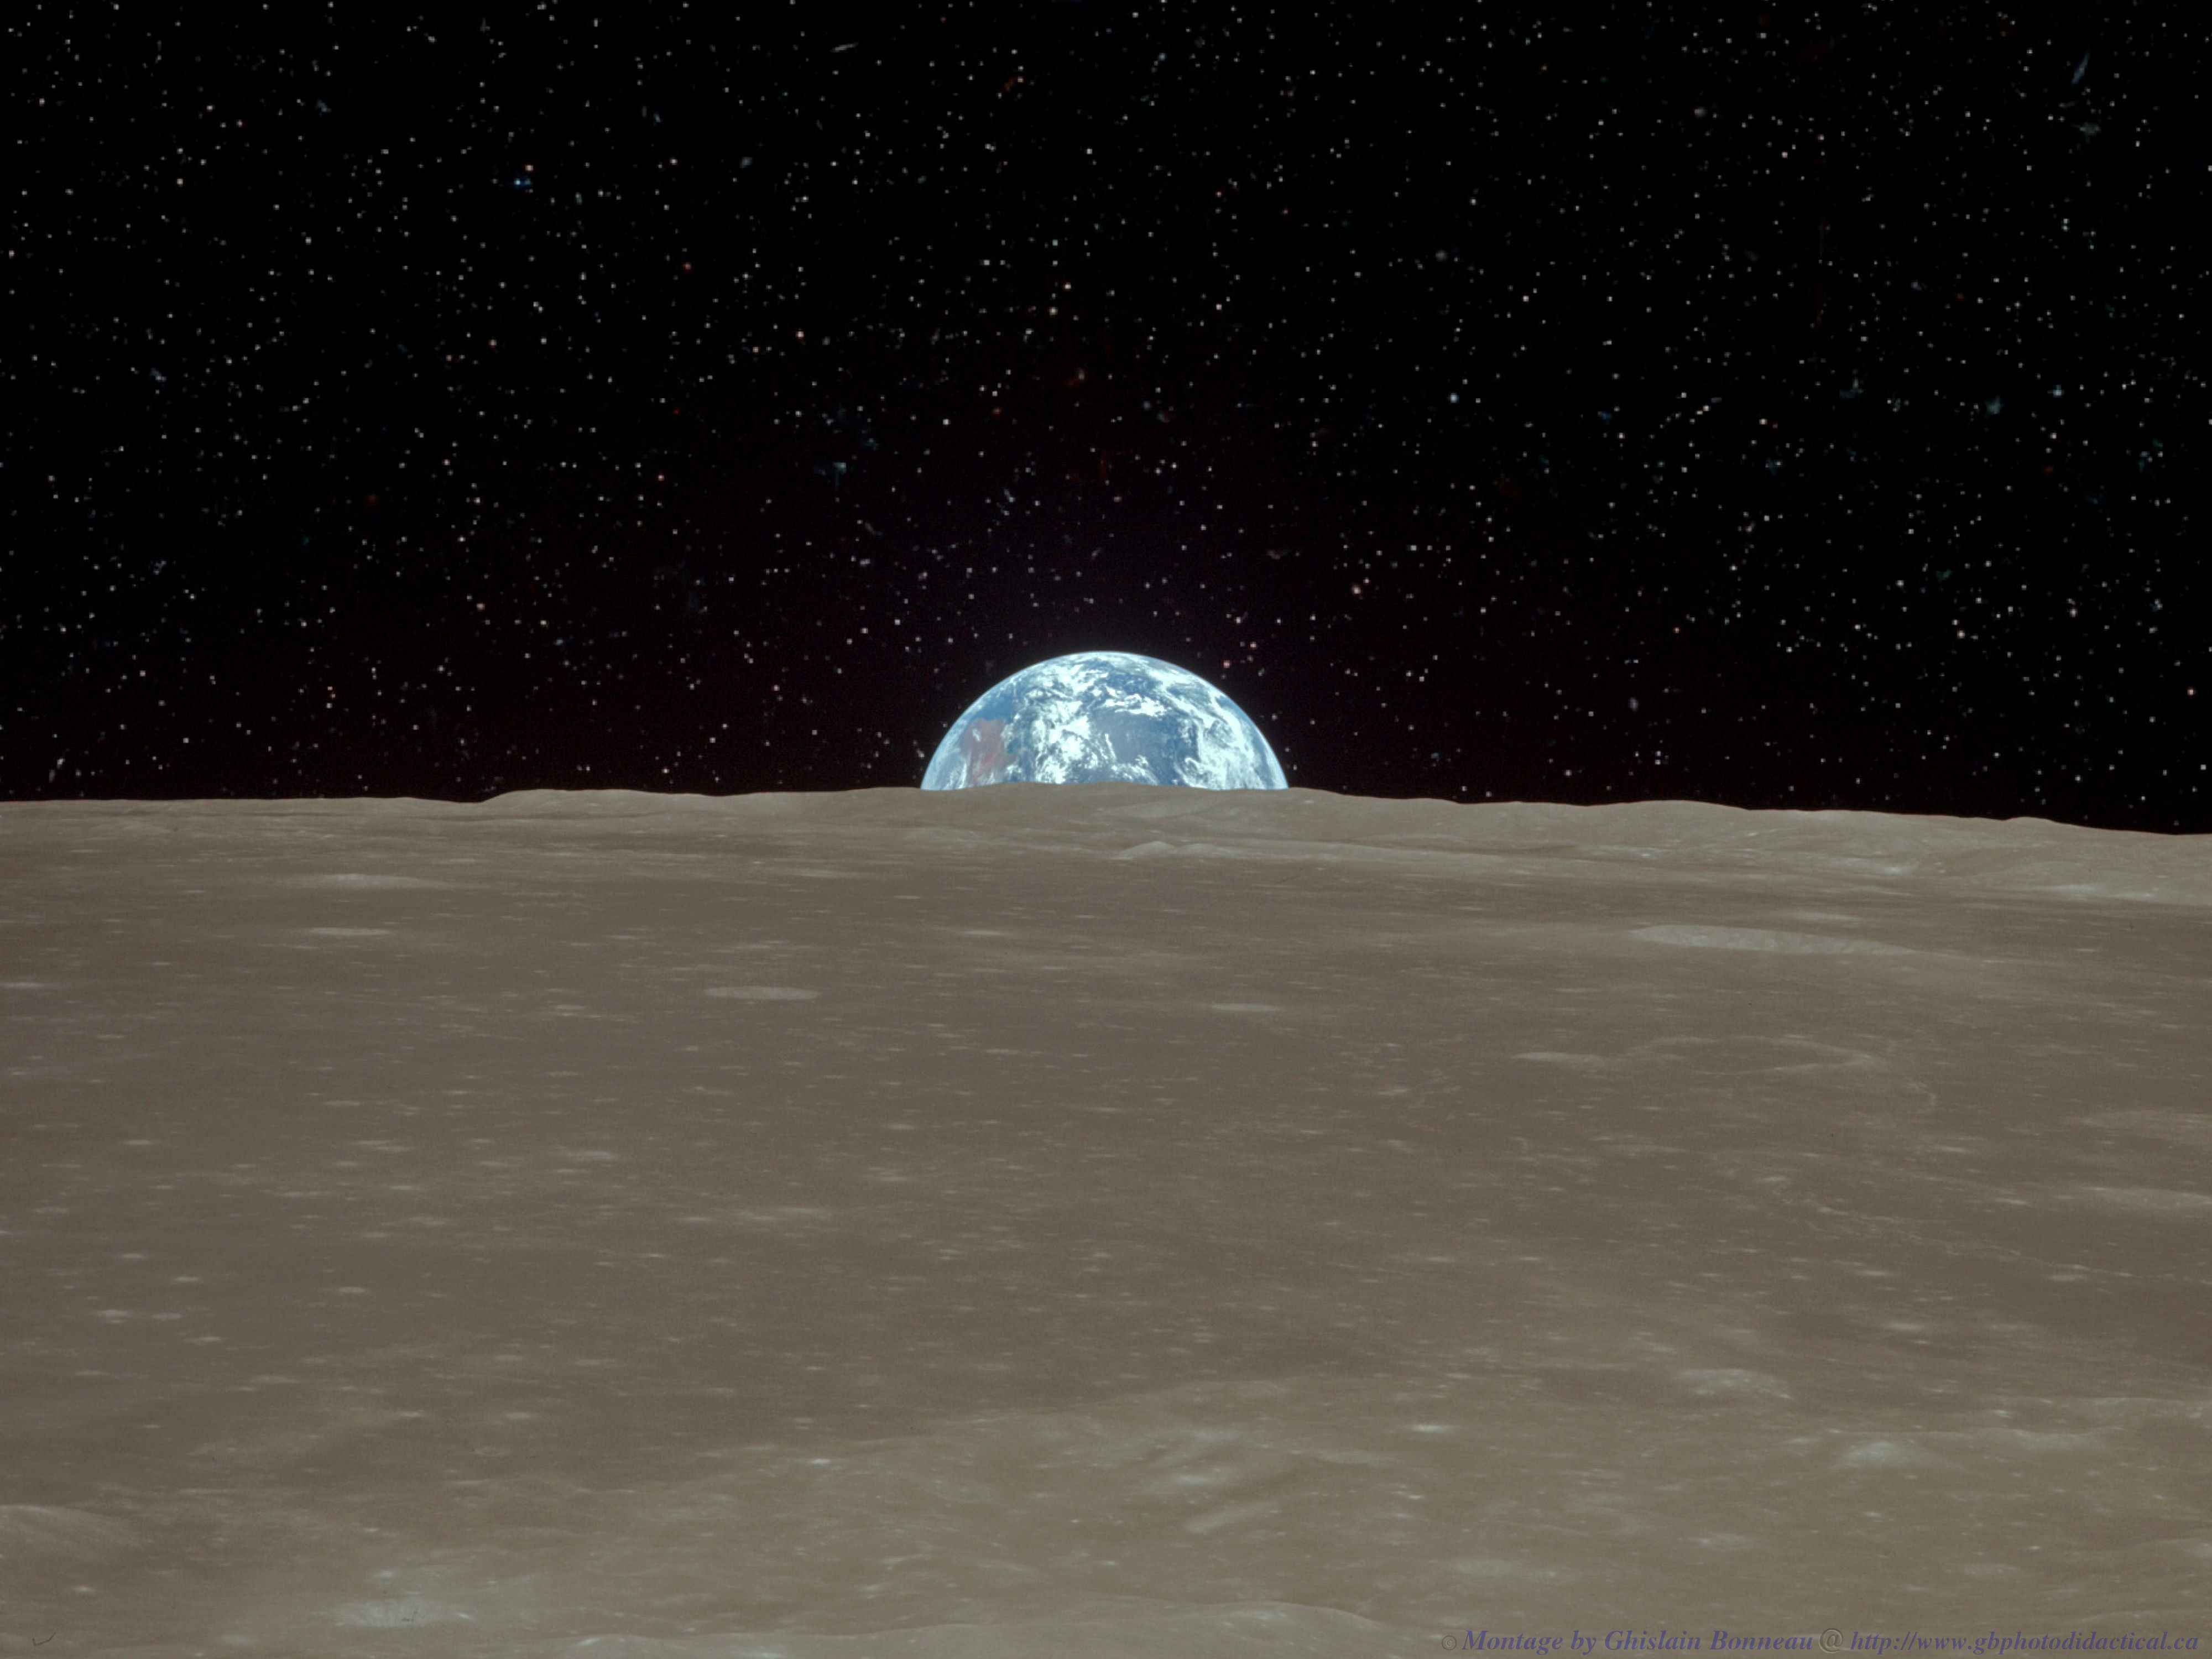 Wallpaper Nasa Apollo Earthrise From The Moon